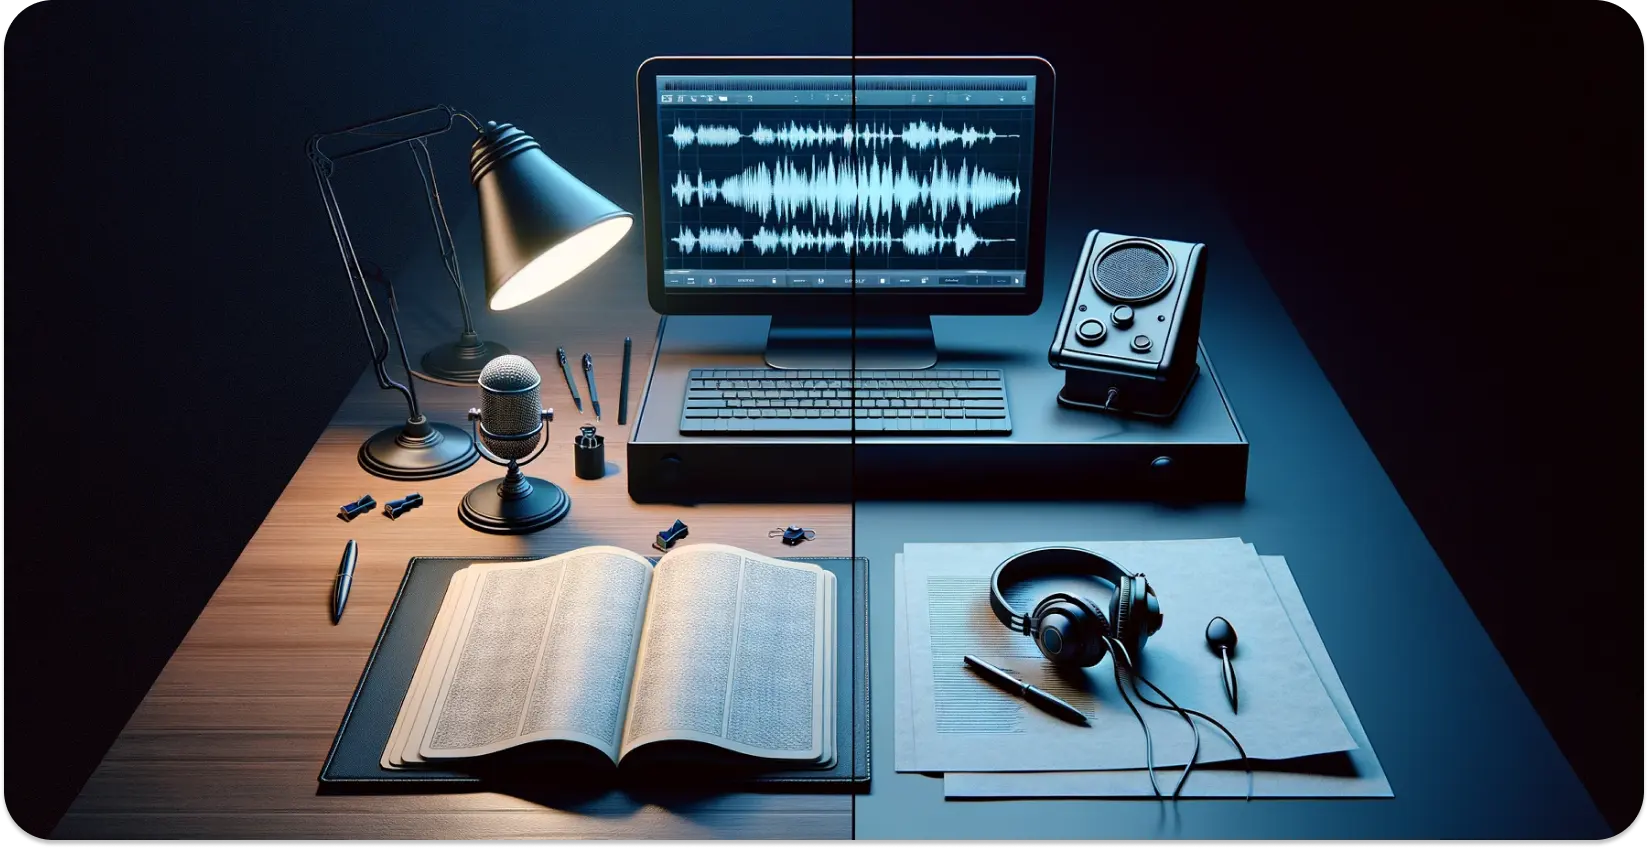 Μια σύγχρονη ρύθμιση μεταγραφής με μικρόφωνο, ανοιχτό βιβλίο και κυματομορφή στην οθόνη της οθόνης.